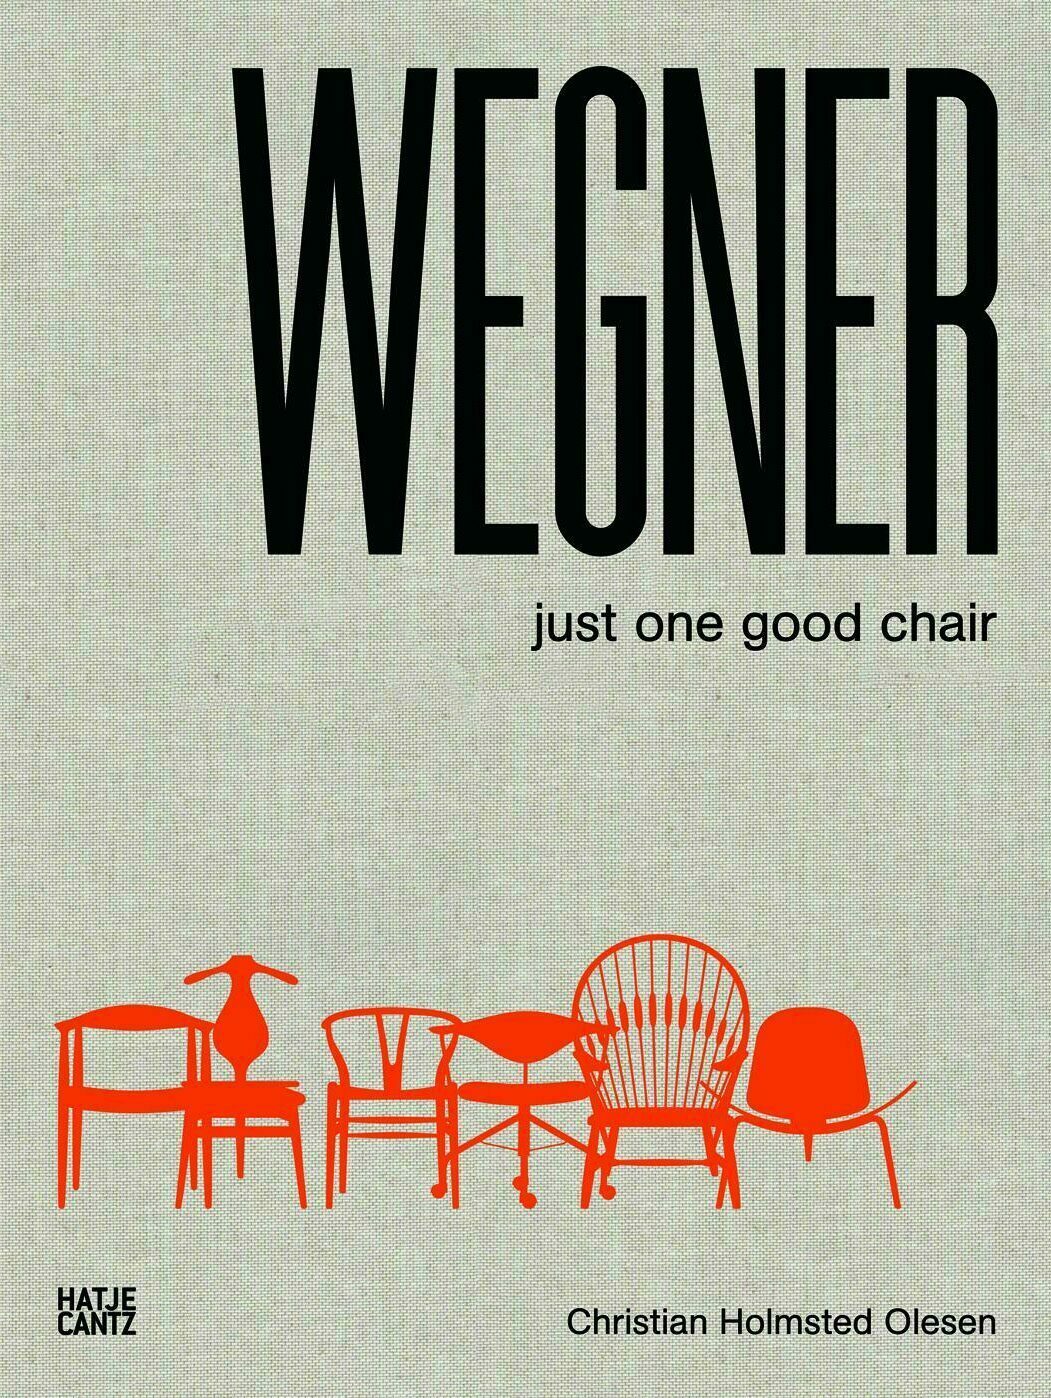 hans j. wegner just one good chair, christian holmsted olesen, wohnbuch, einrichtungsbuch, einrichtungsidee, wohnidee, inneneinrichtung, architektur, interieur